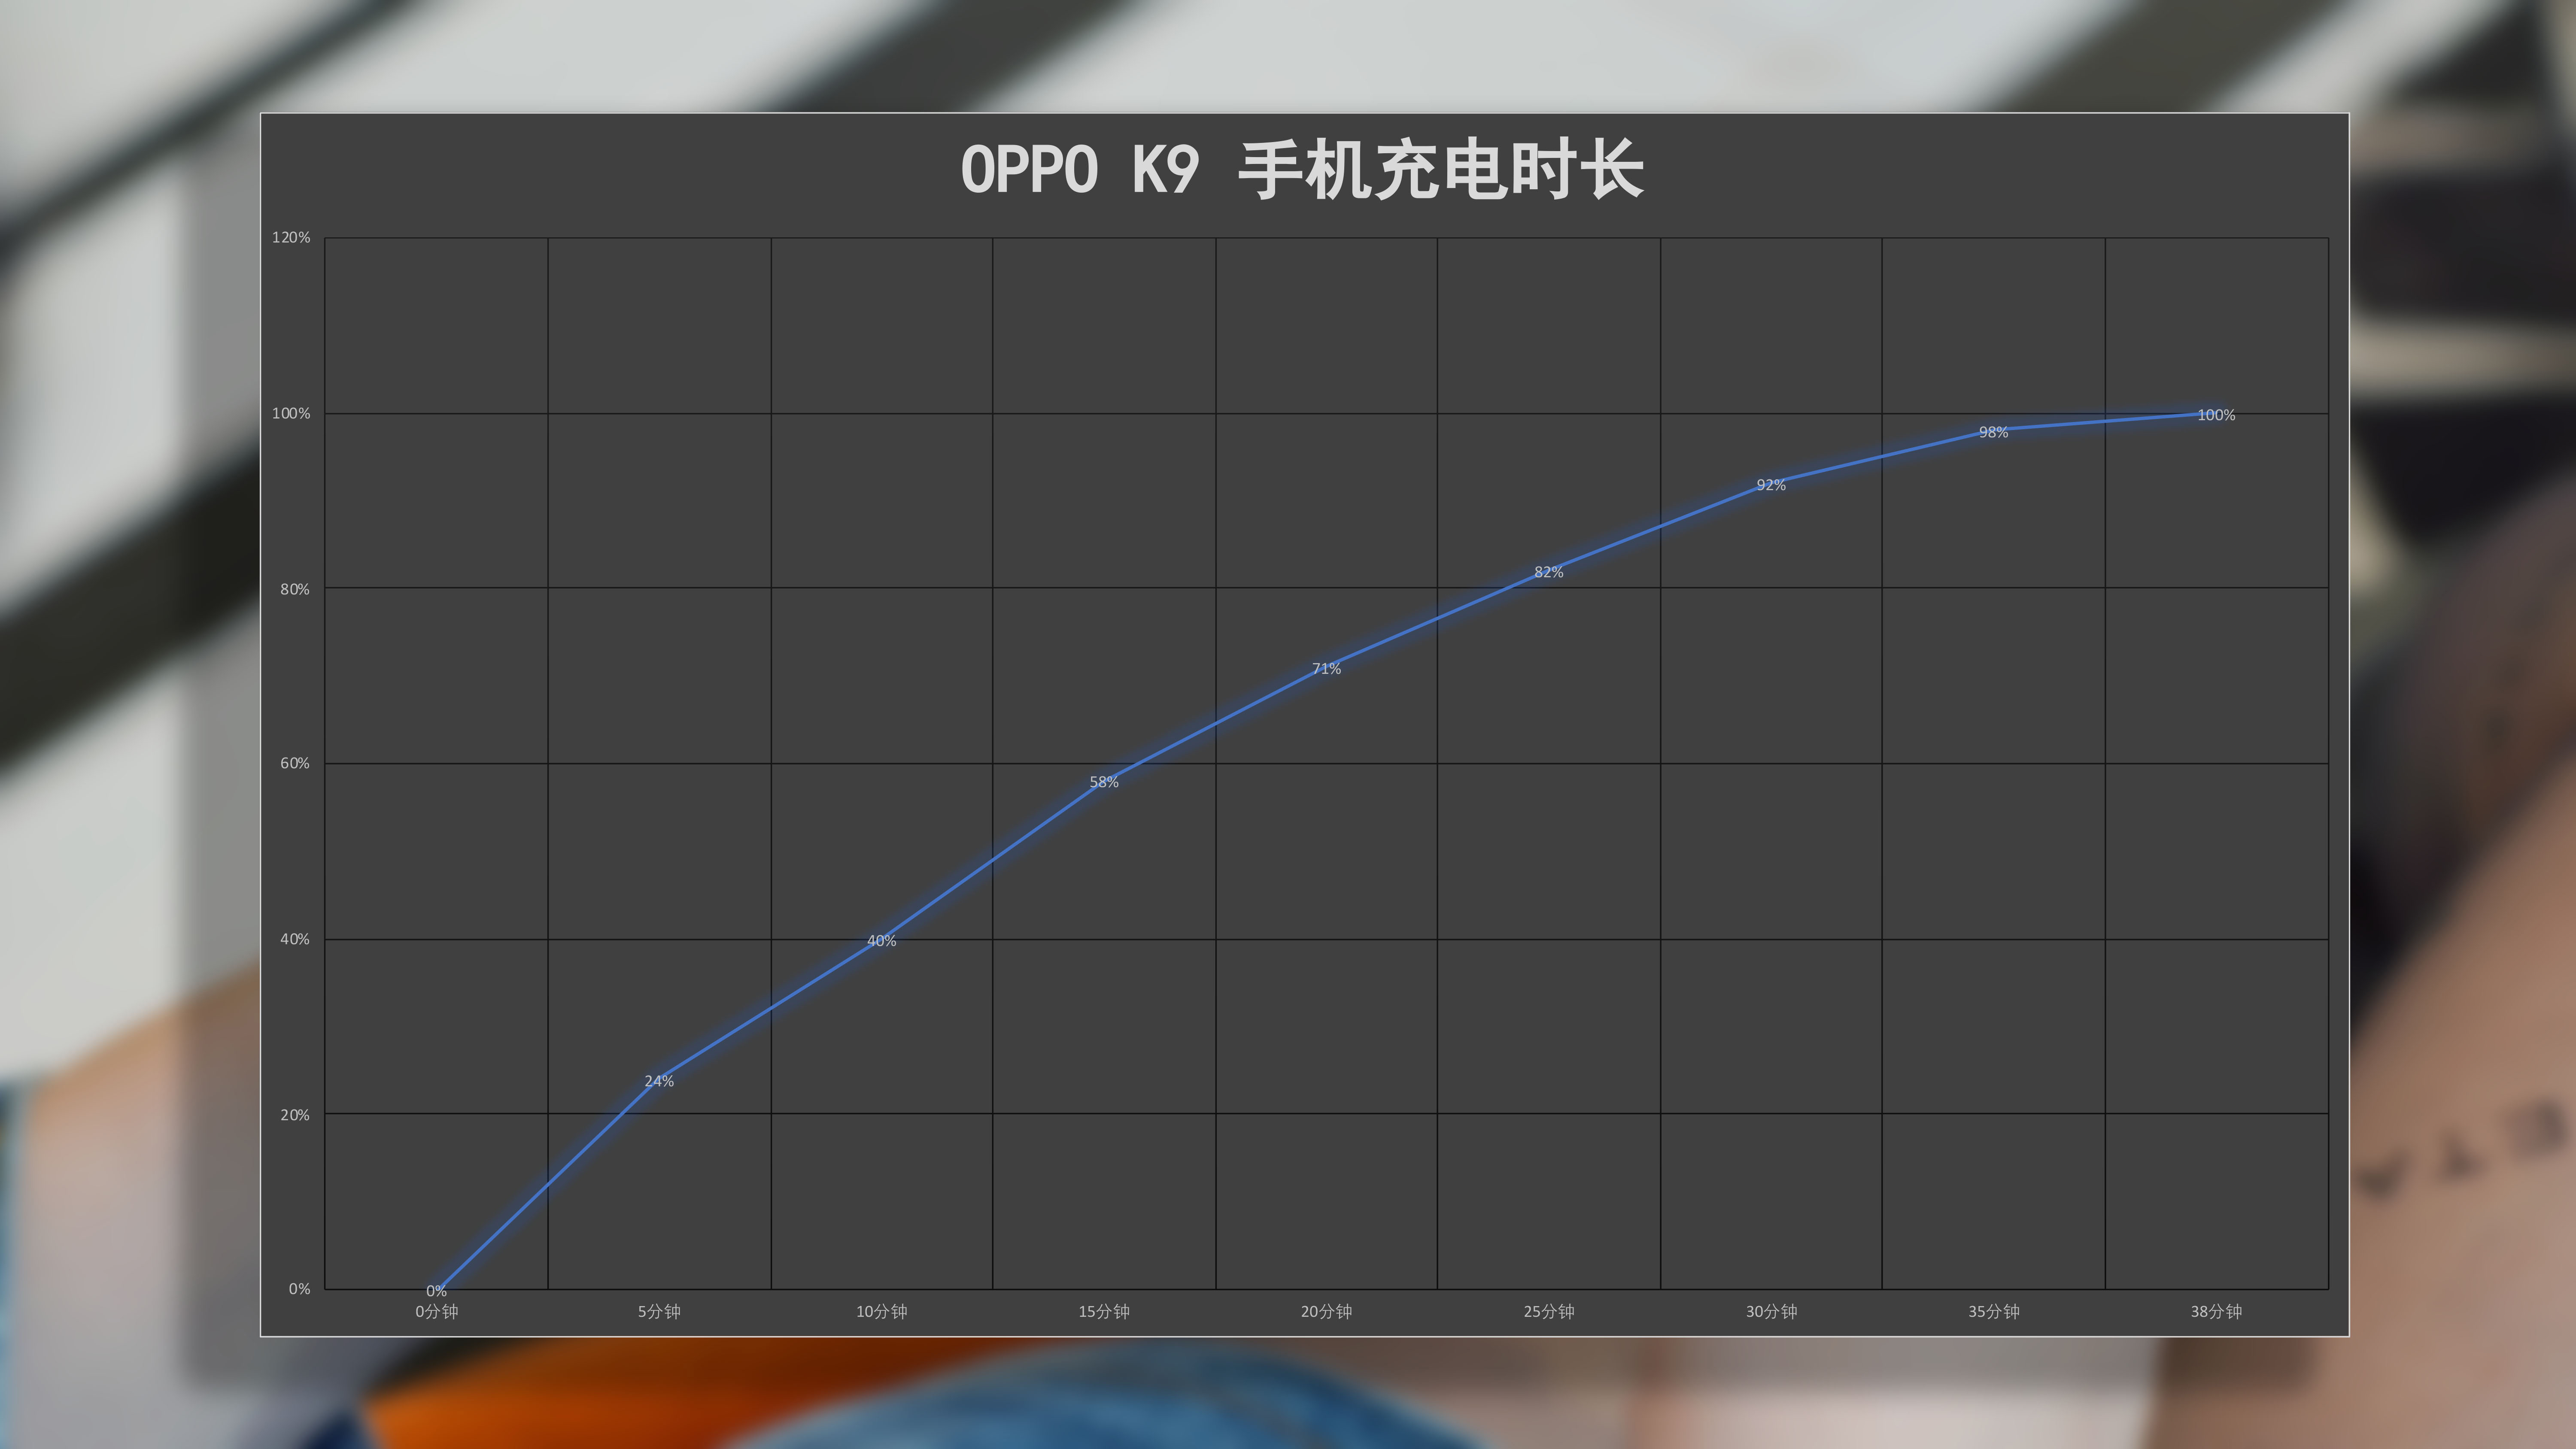 OPPO K9手机如何？上手实测亮点多，充电速度远超千元级机型